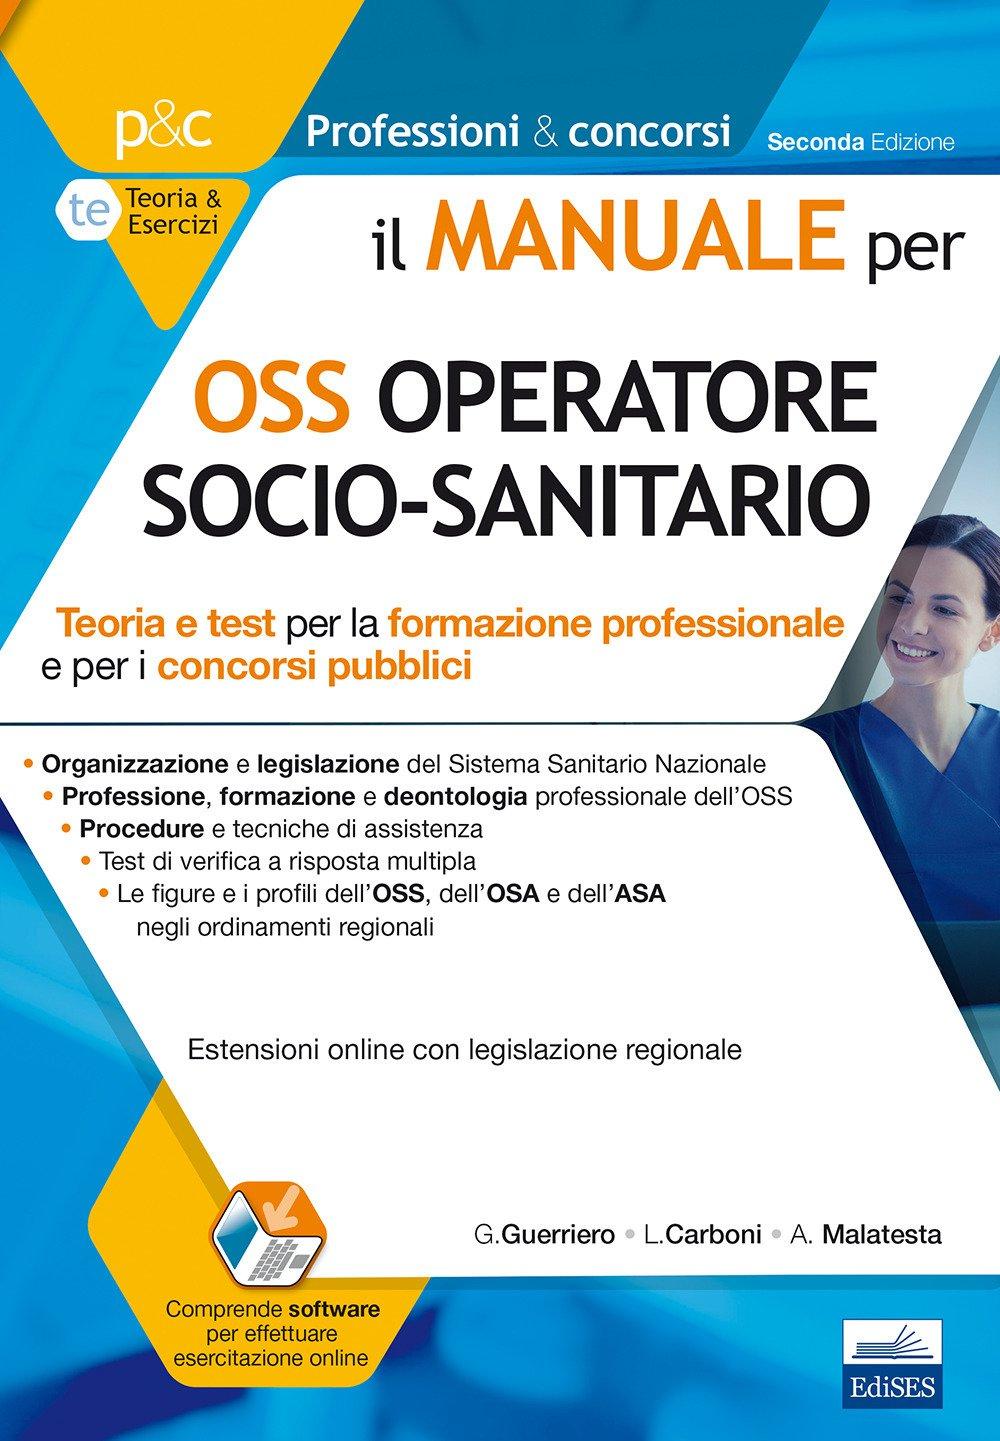 Sport estremi, a Il Manuale per OSS Operatore Socio-Sanitario.